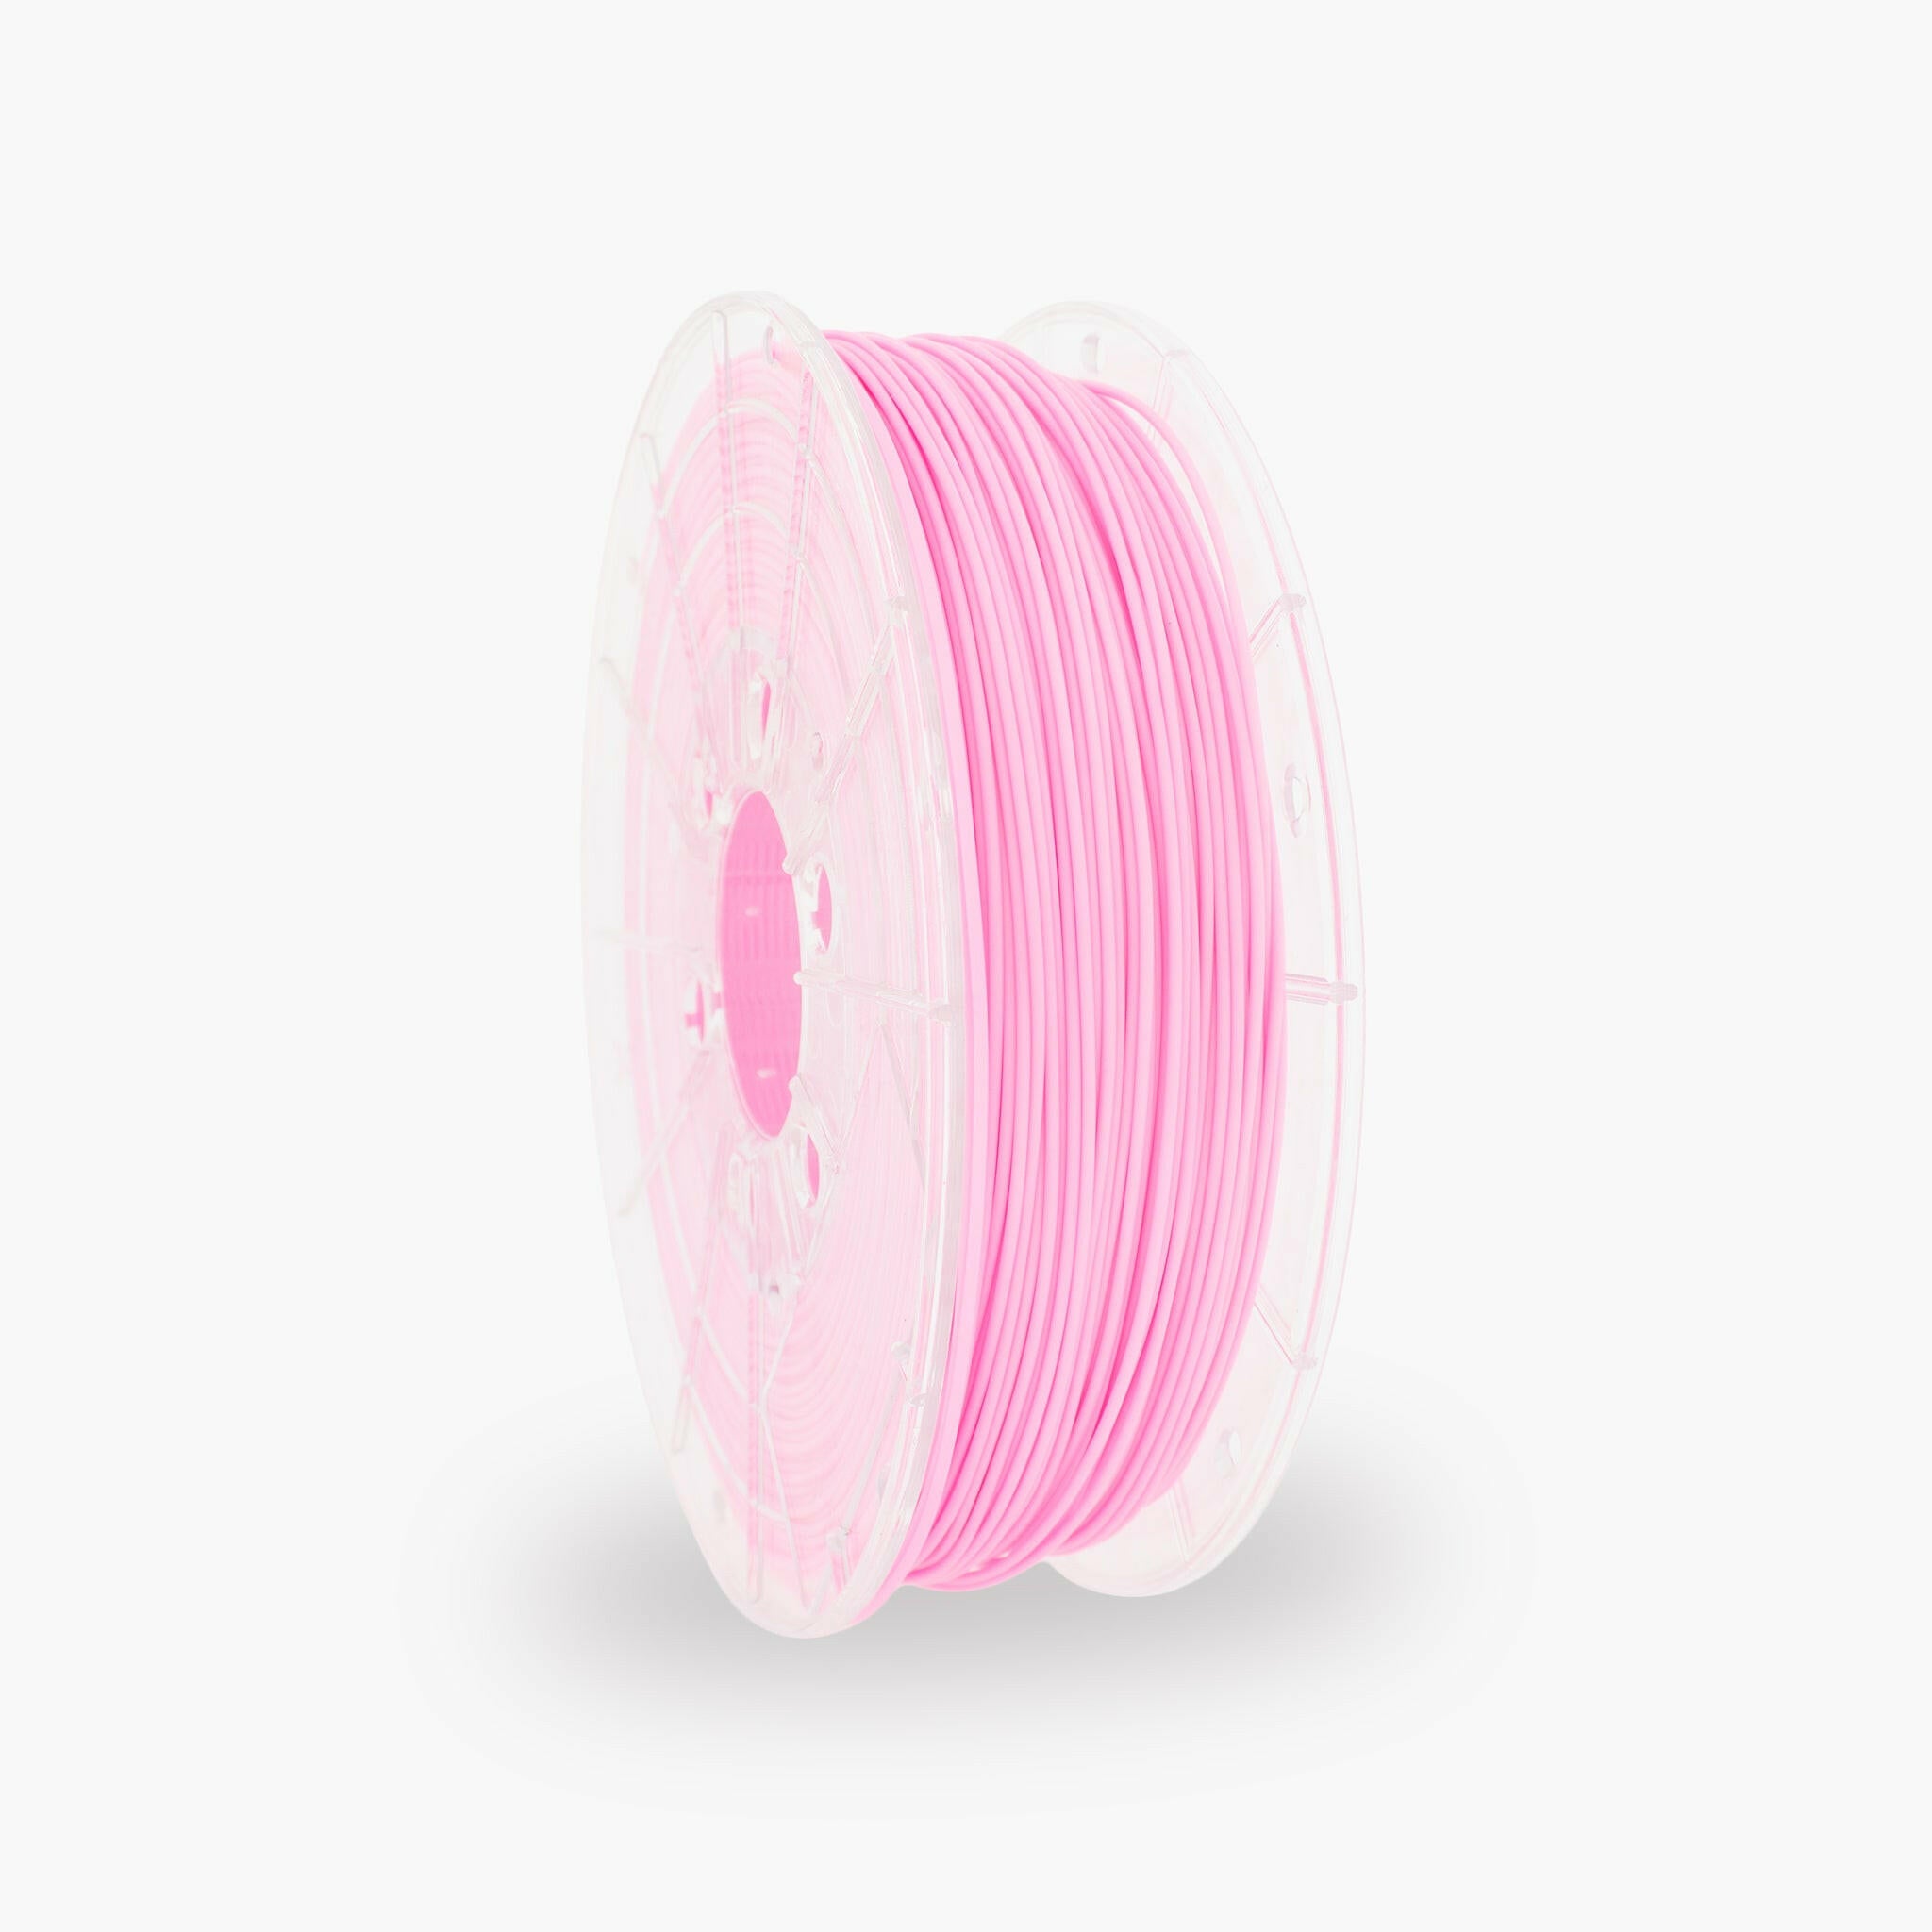 PLA Satin - Pink Sweet